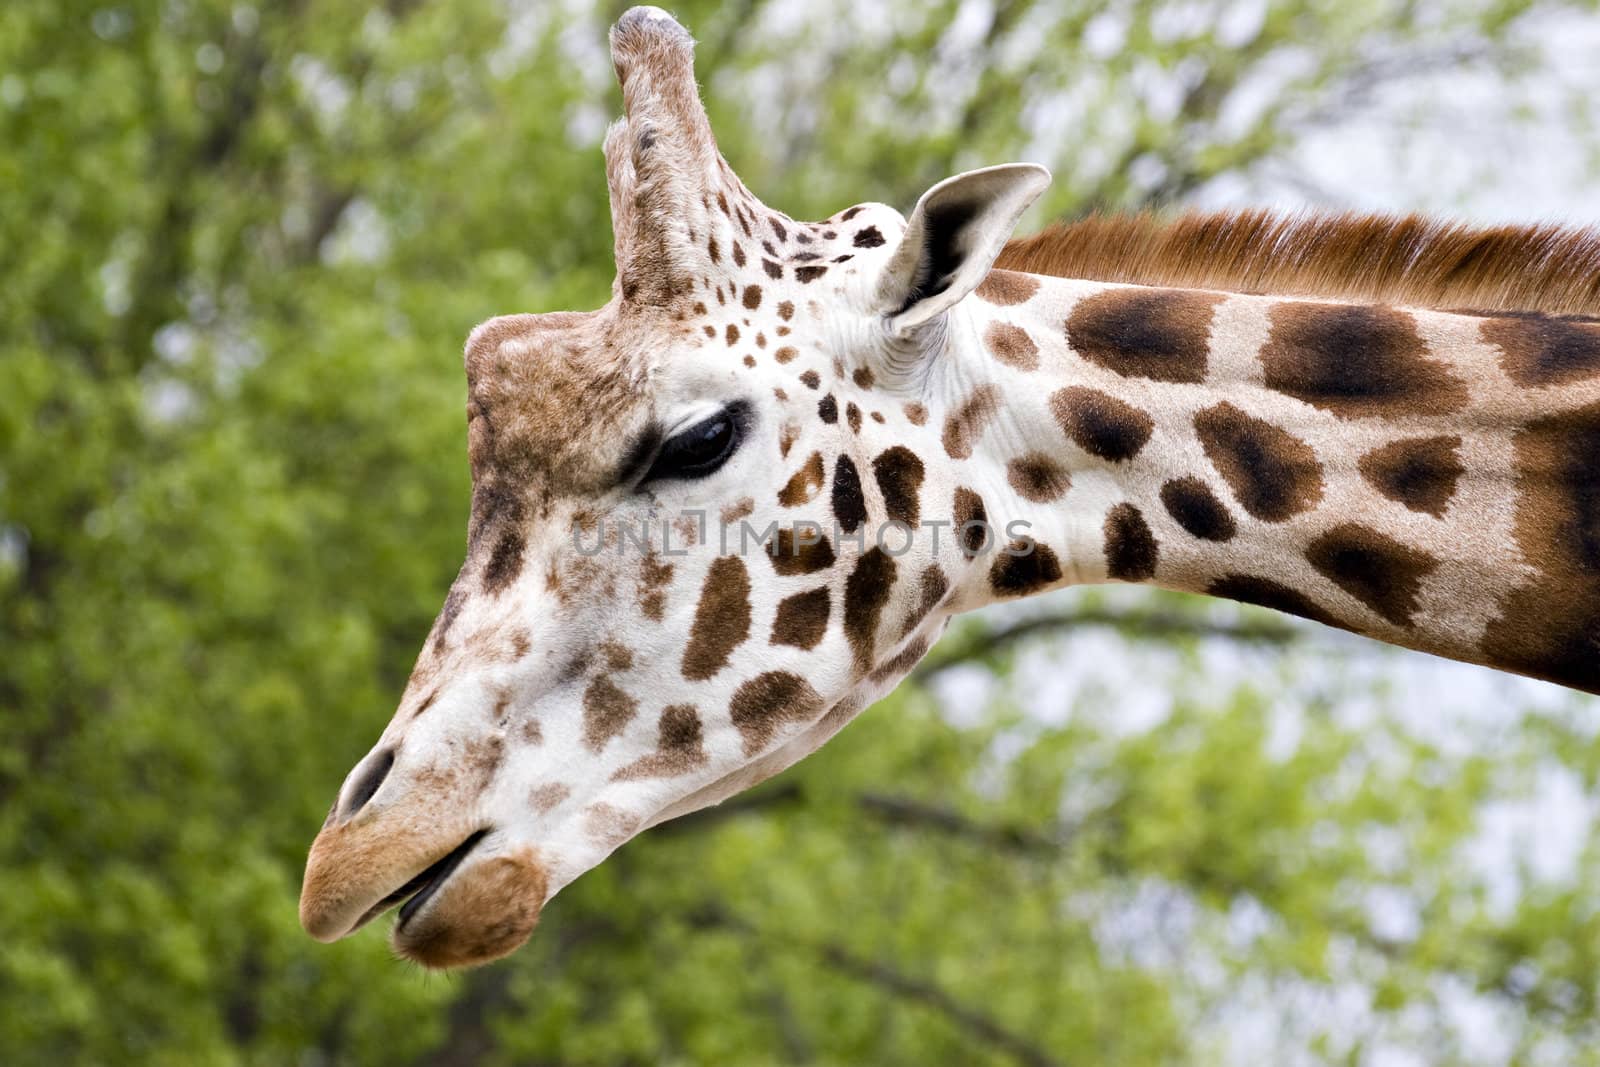 A close up of a giraffe